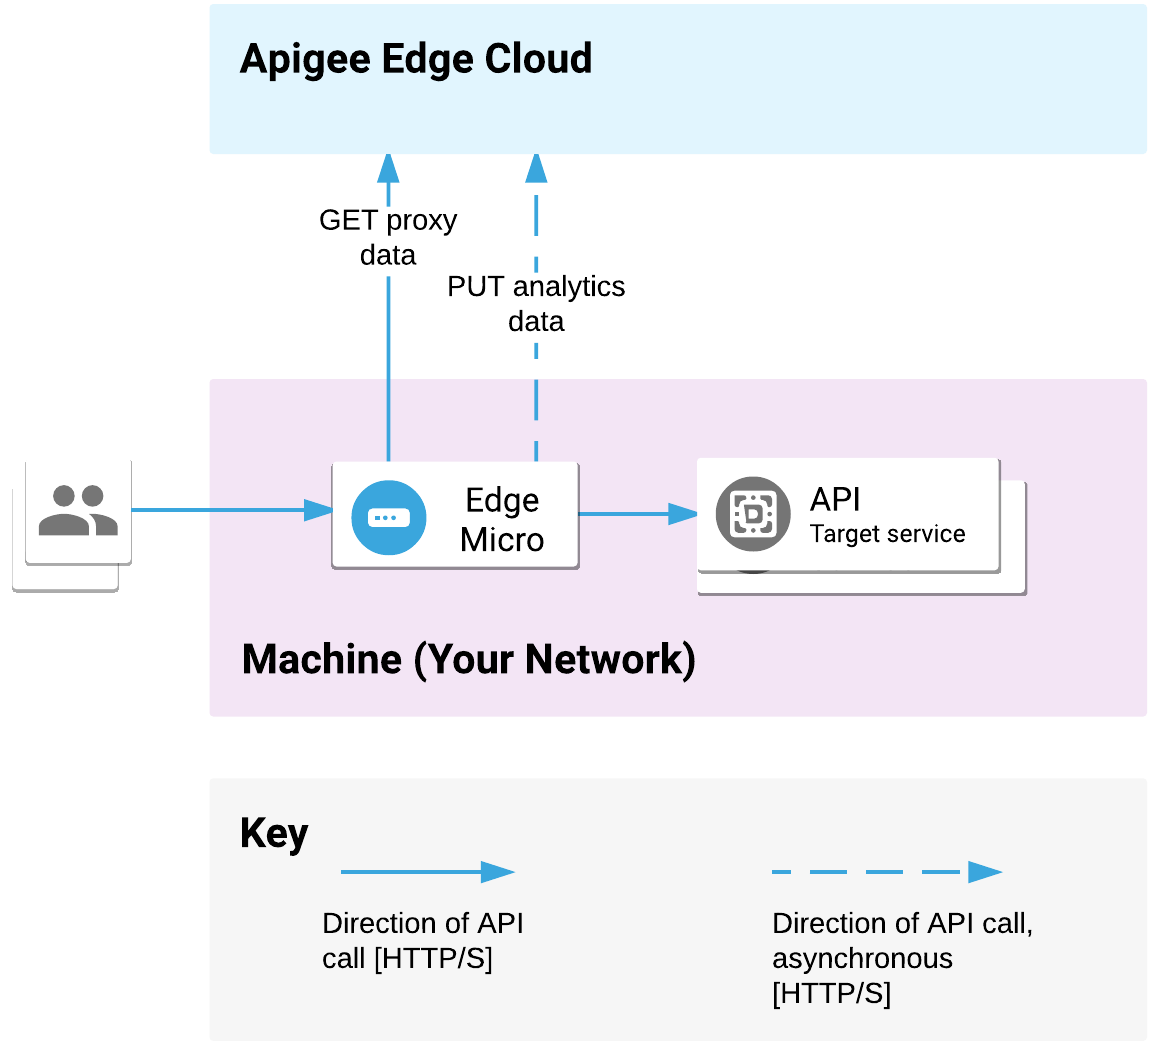 आपके नेटवर्क पर एज माइक्रोगेटवे डिप्लॉय किया गया है. यह क्लाइंट के एपीआई अनुरोधों को प्रोसेस करता है और टारगेट सेवाओं को कॉल करता है. माइक्रोगेटवे, Apigee Edge Cloud की मदद से, प्रॉक्सी और आंकड़ों
 से जुड़े डेटा को जानकारी देता है.